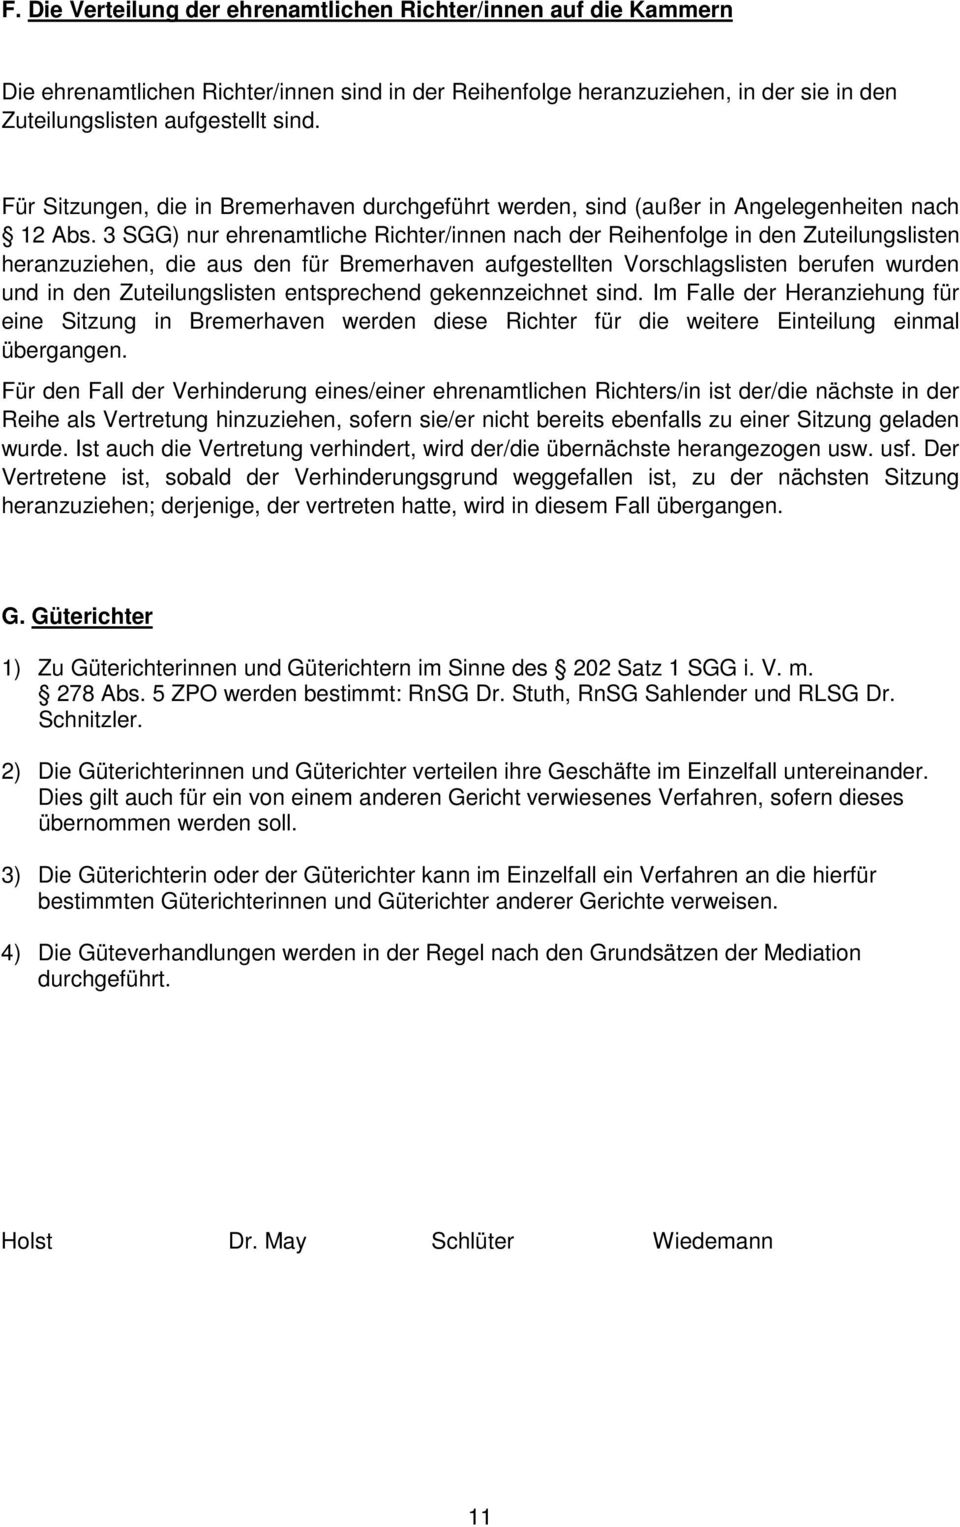 3 SGG) nur ehrenamtliche Richter/innen nach der Reihenfolge in den Zuteilungslisten heranzuziehen, die aus den für Bremerhaven aufgestellten Vorschlagslisten berufen wurden und in den